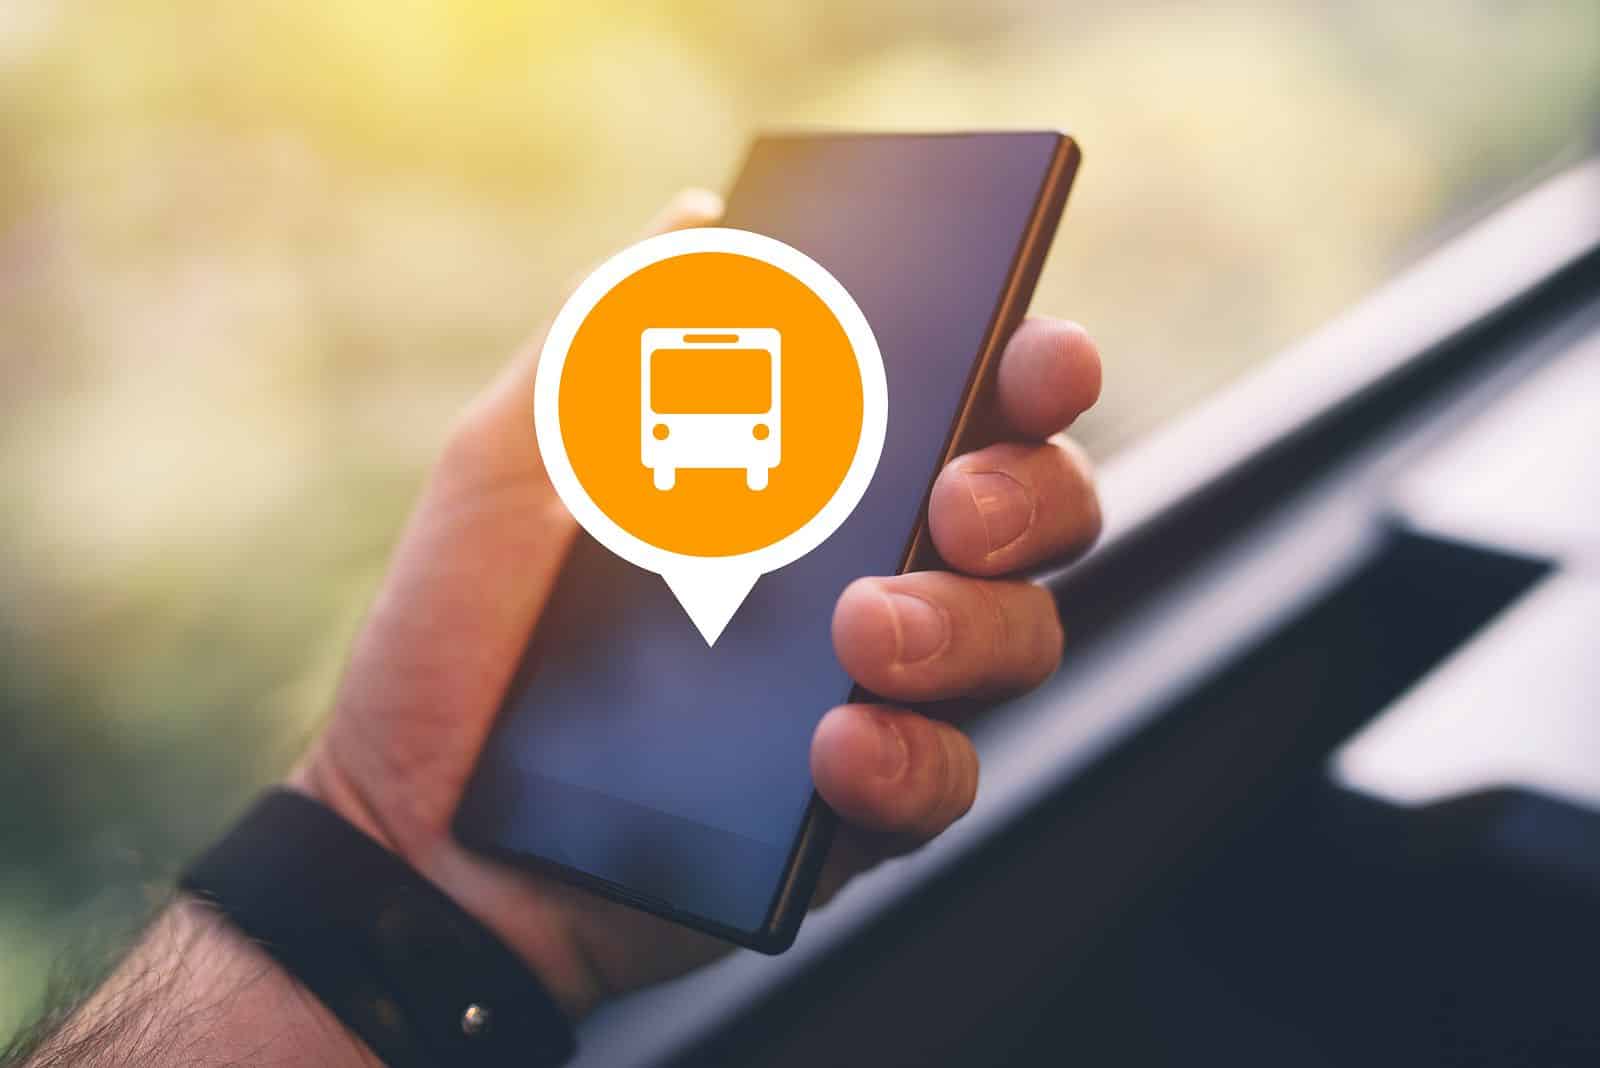 Εφαρμογή λεωφορείου σε πραγματικό χρόνο: μάθετε πού βρίσκεται το λεωφορείο σας